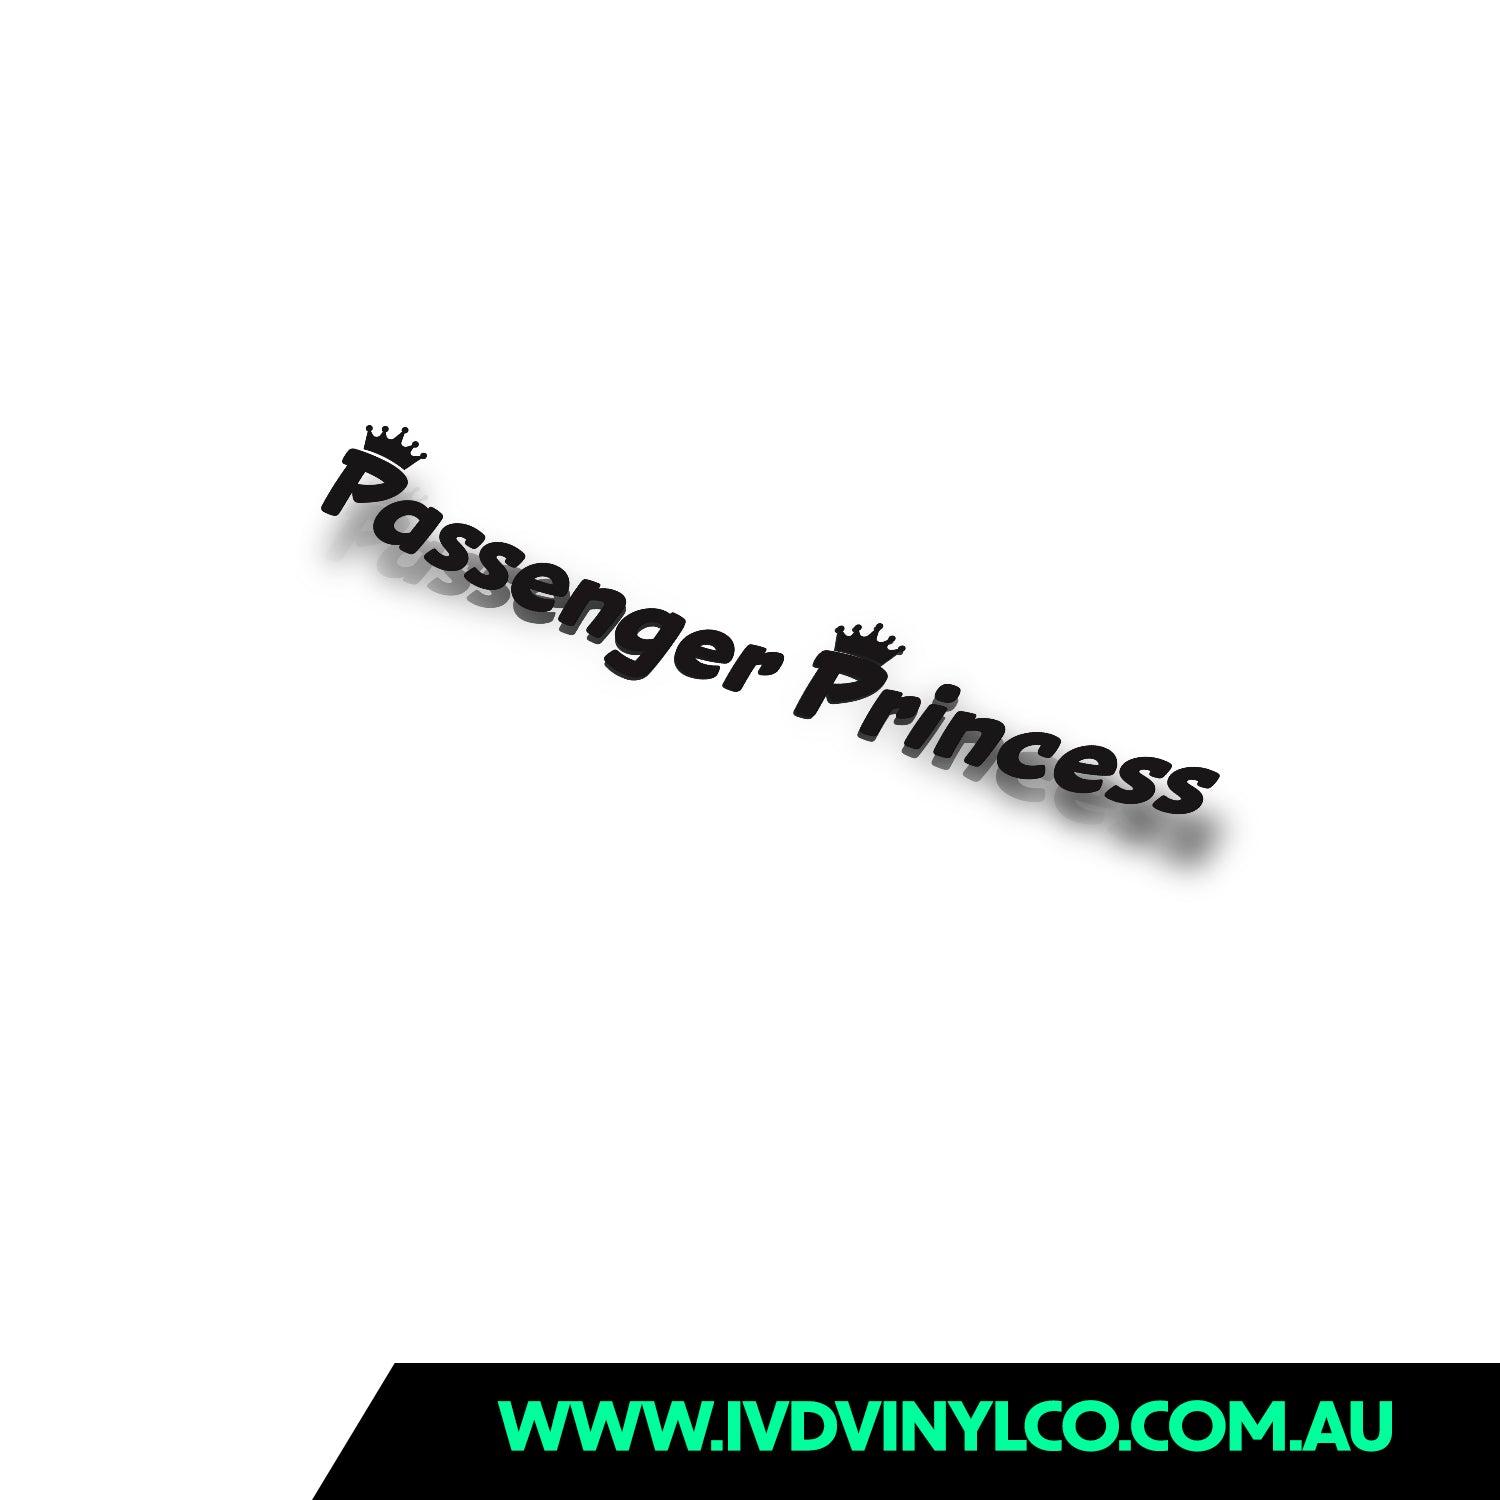 http://ivdvinylco.com.au/cdn/shop/files/passenger-princess.jpg?v=1707002704